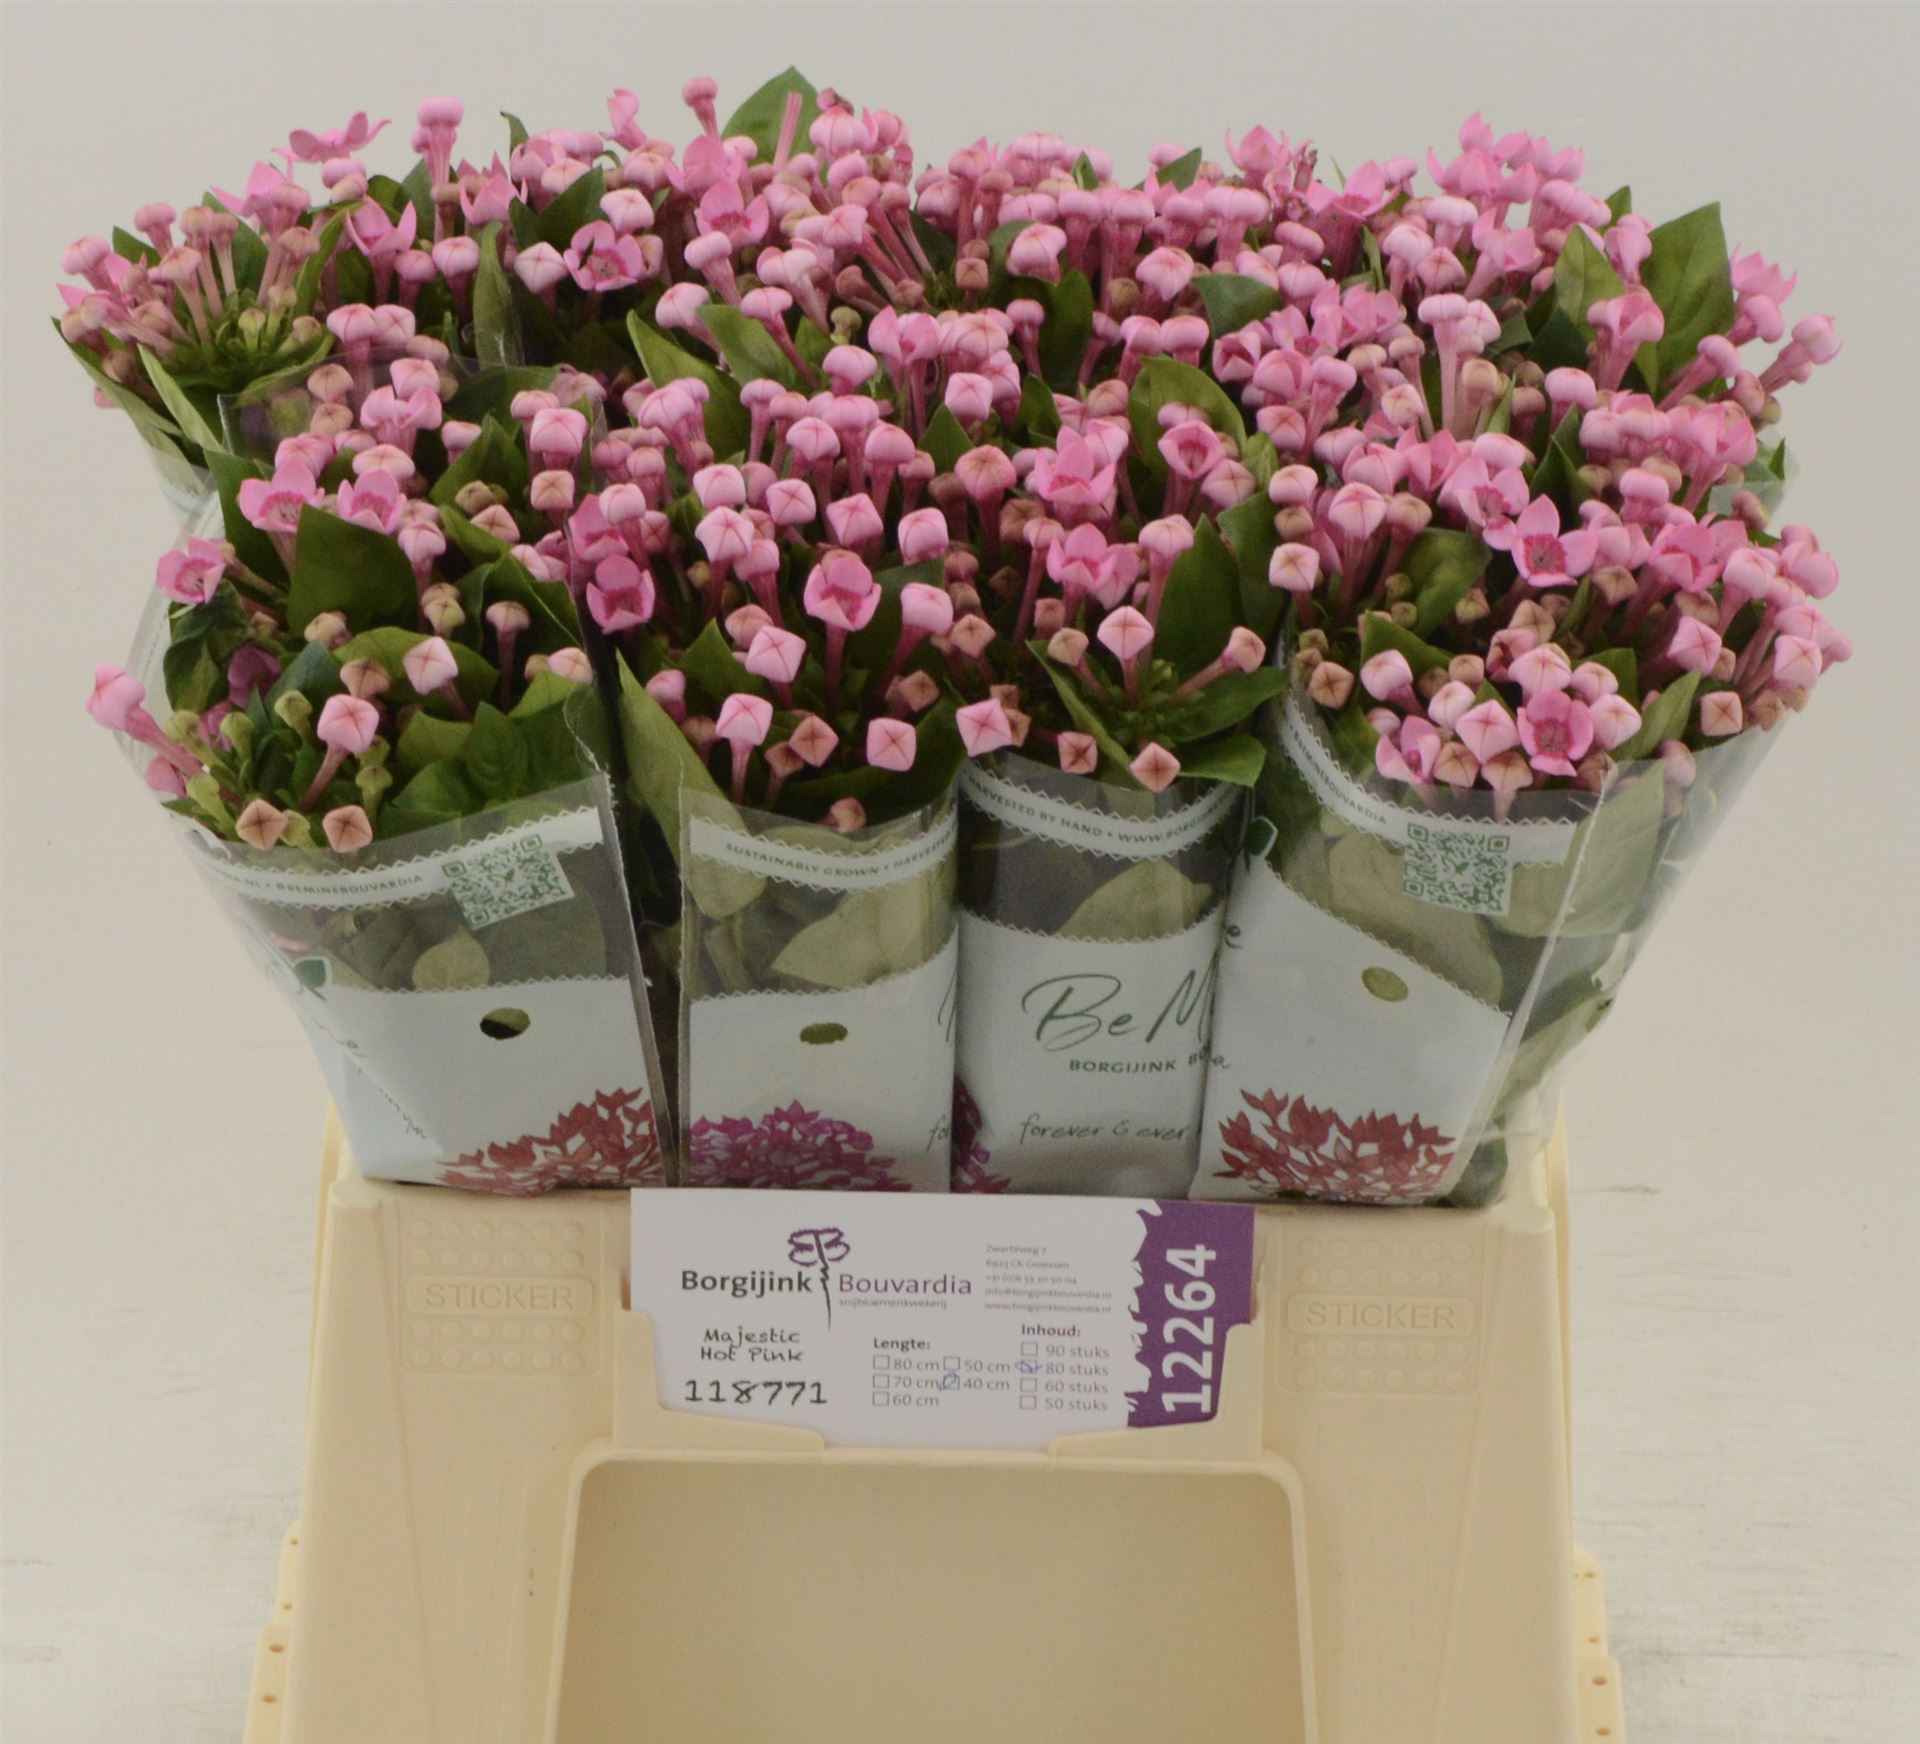 Срезанные цветы оптом Bouvardia si majestic hot pink от 80шт из Голландии с доставкой по России